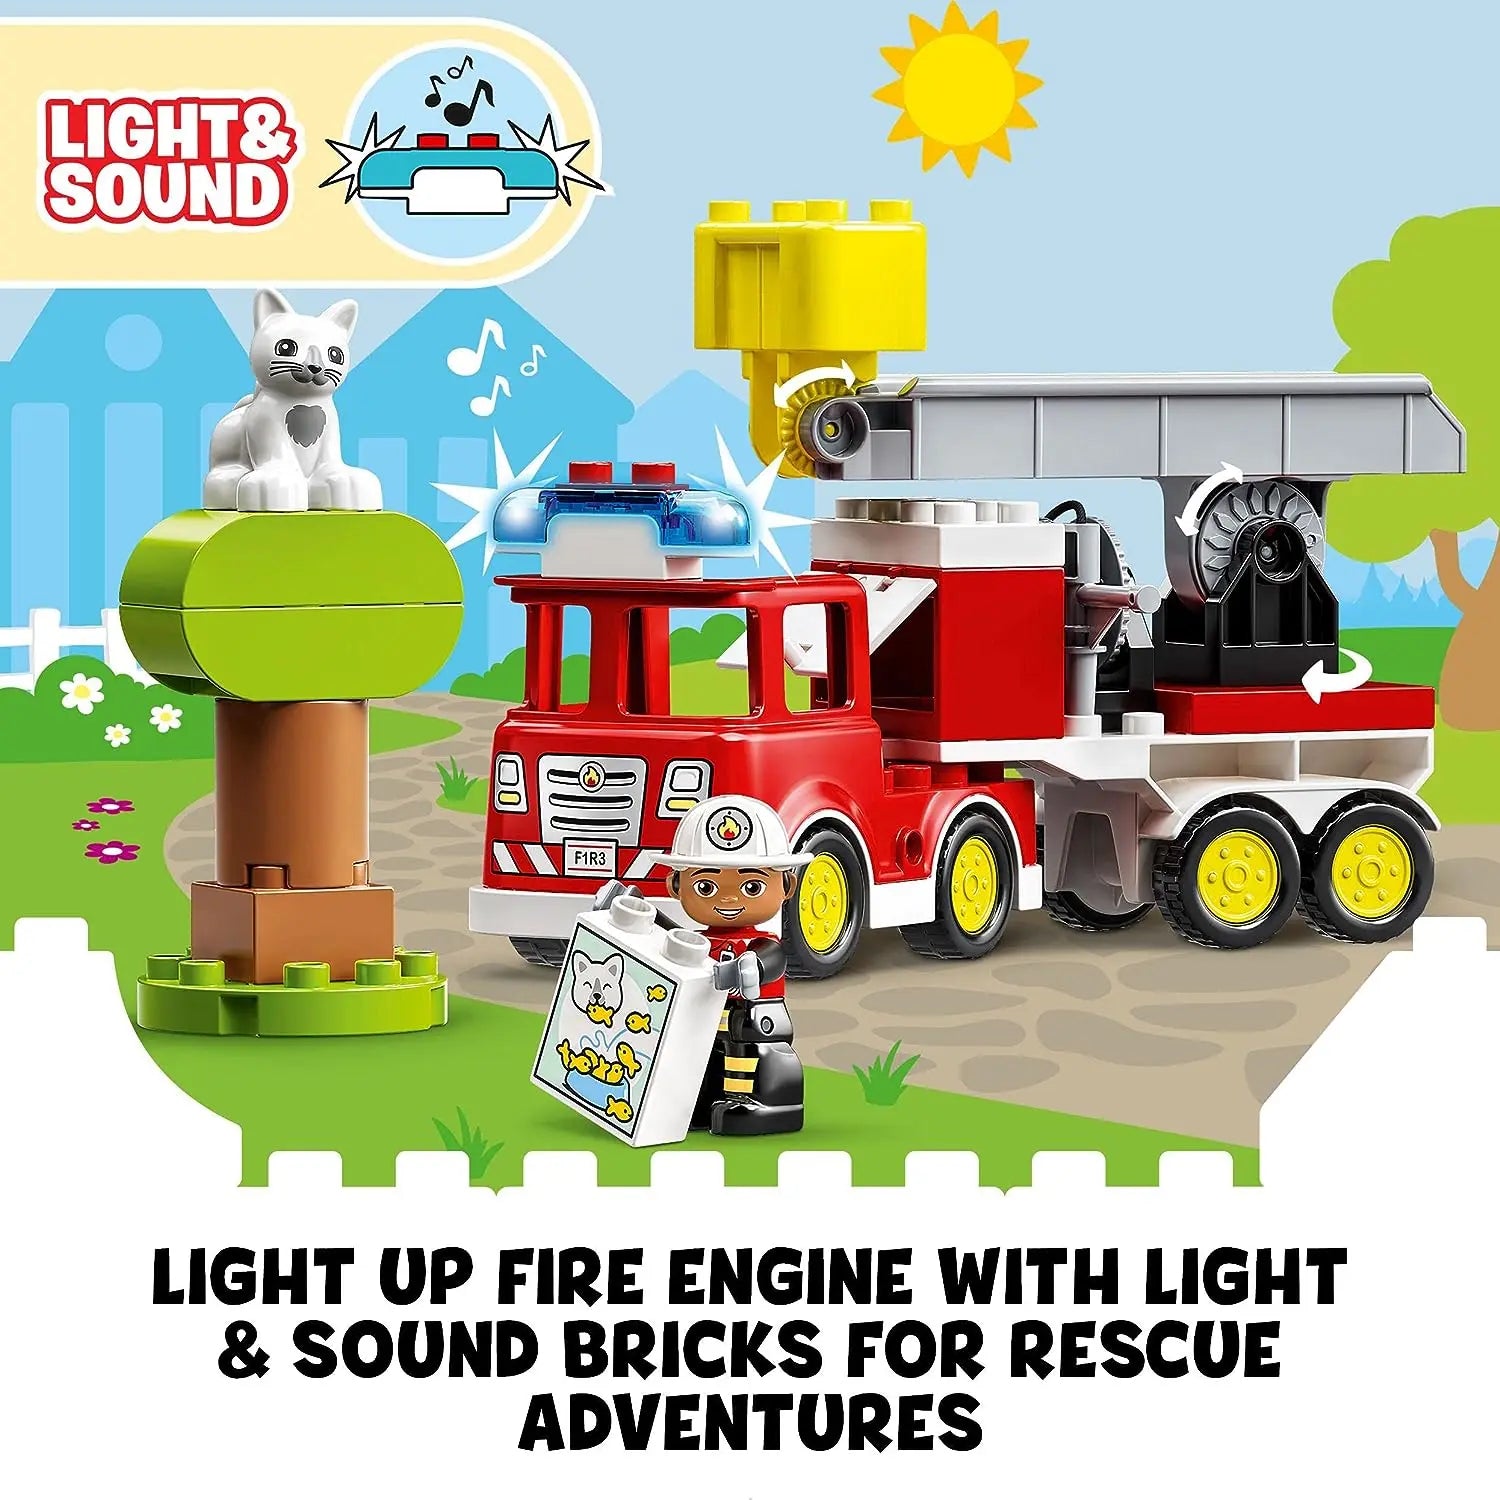 LEGO Duplo 10969 Le camion de pompiers 10969